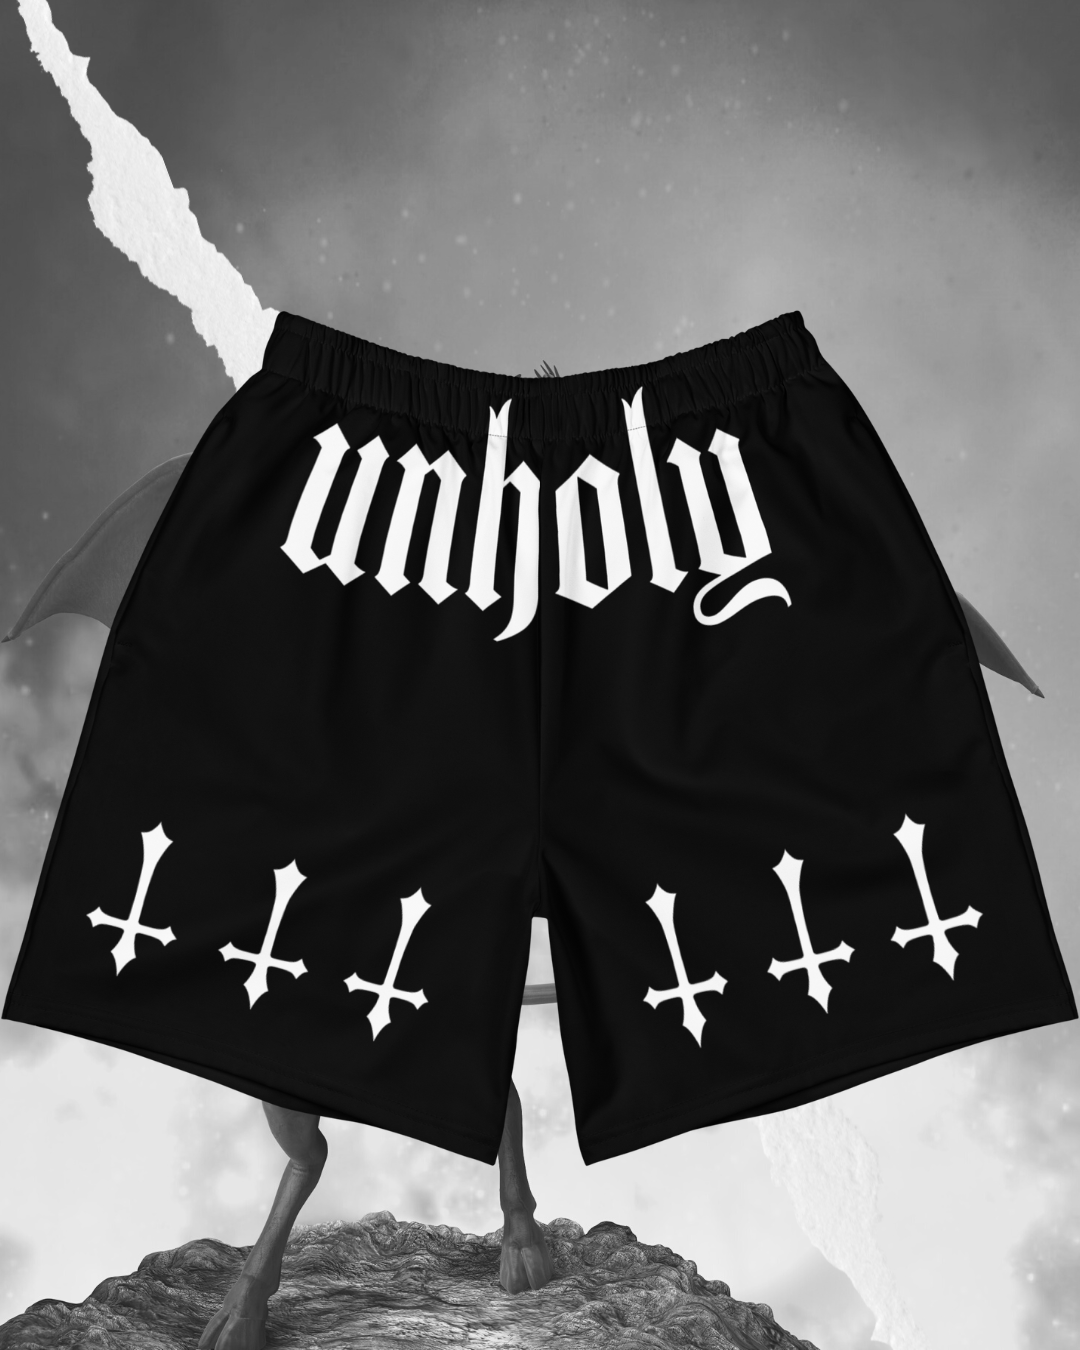 Unholy Athletic Shorts